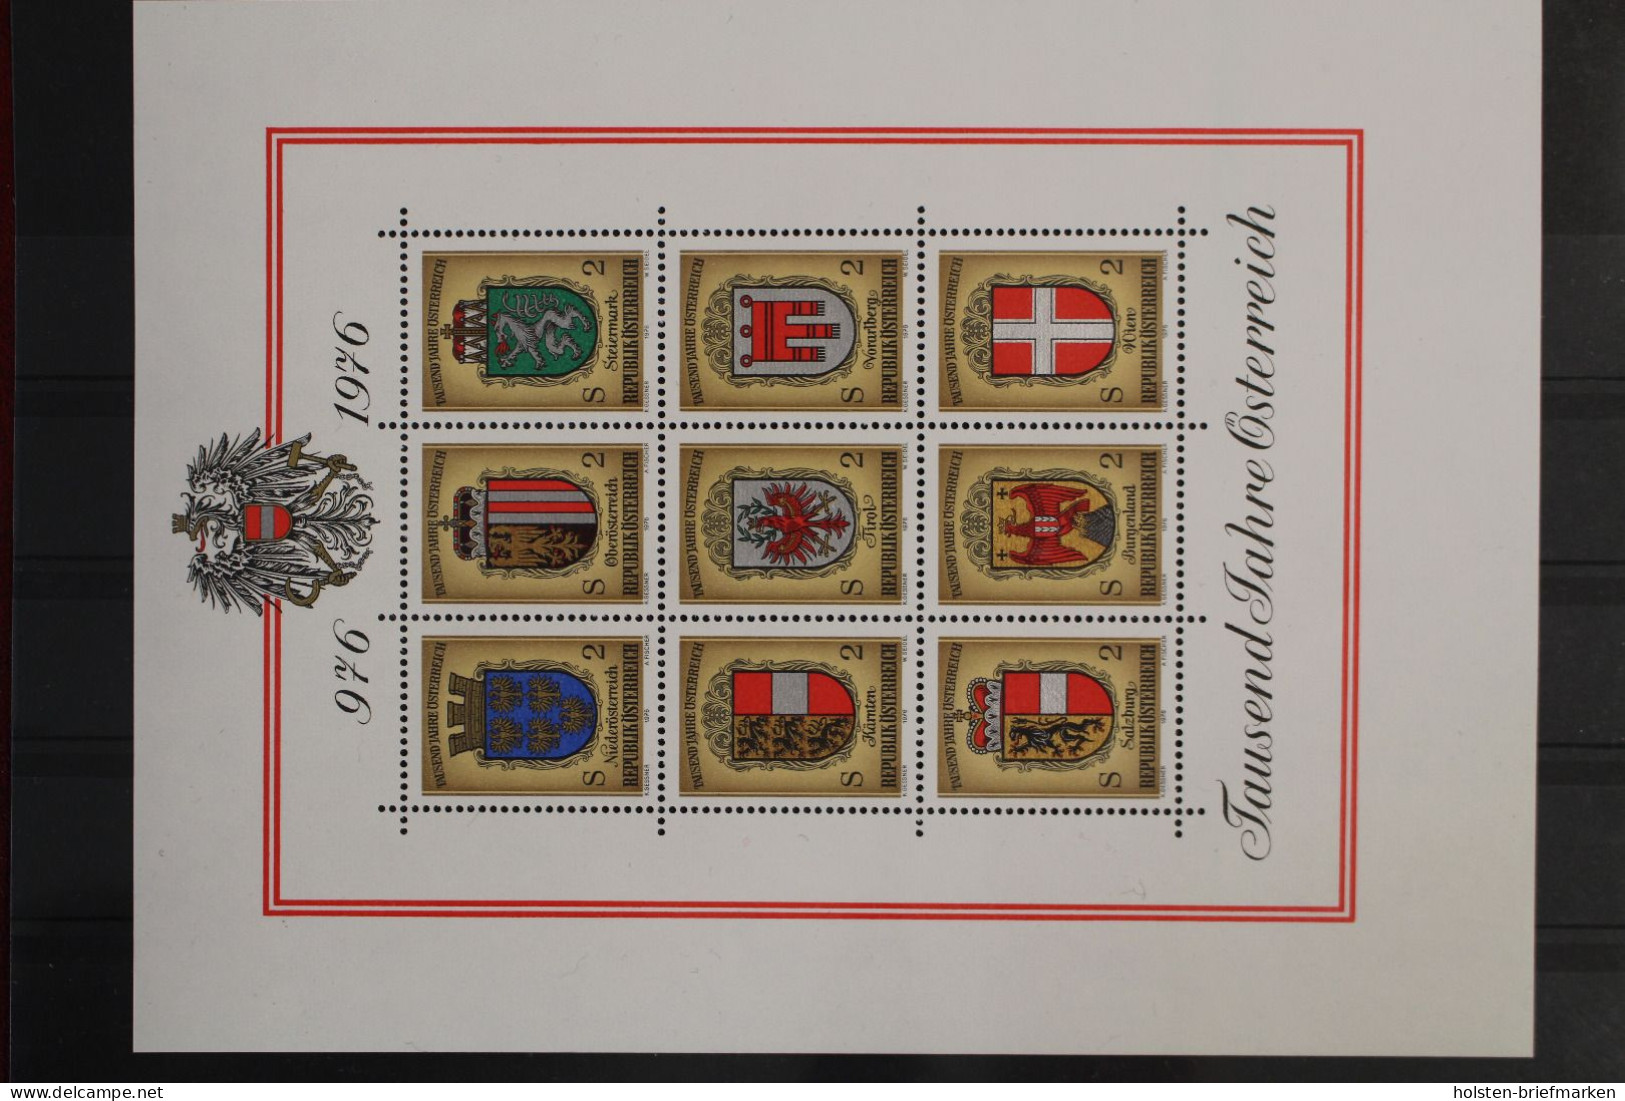 Österreich, MiNr. 1506-1539, Jahrgang 1976, Postfrisch - Full Years